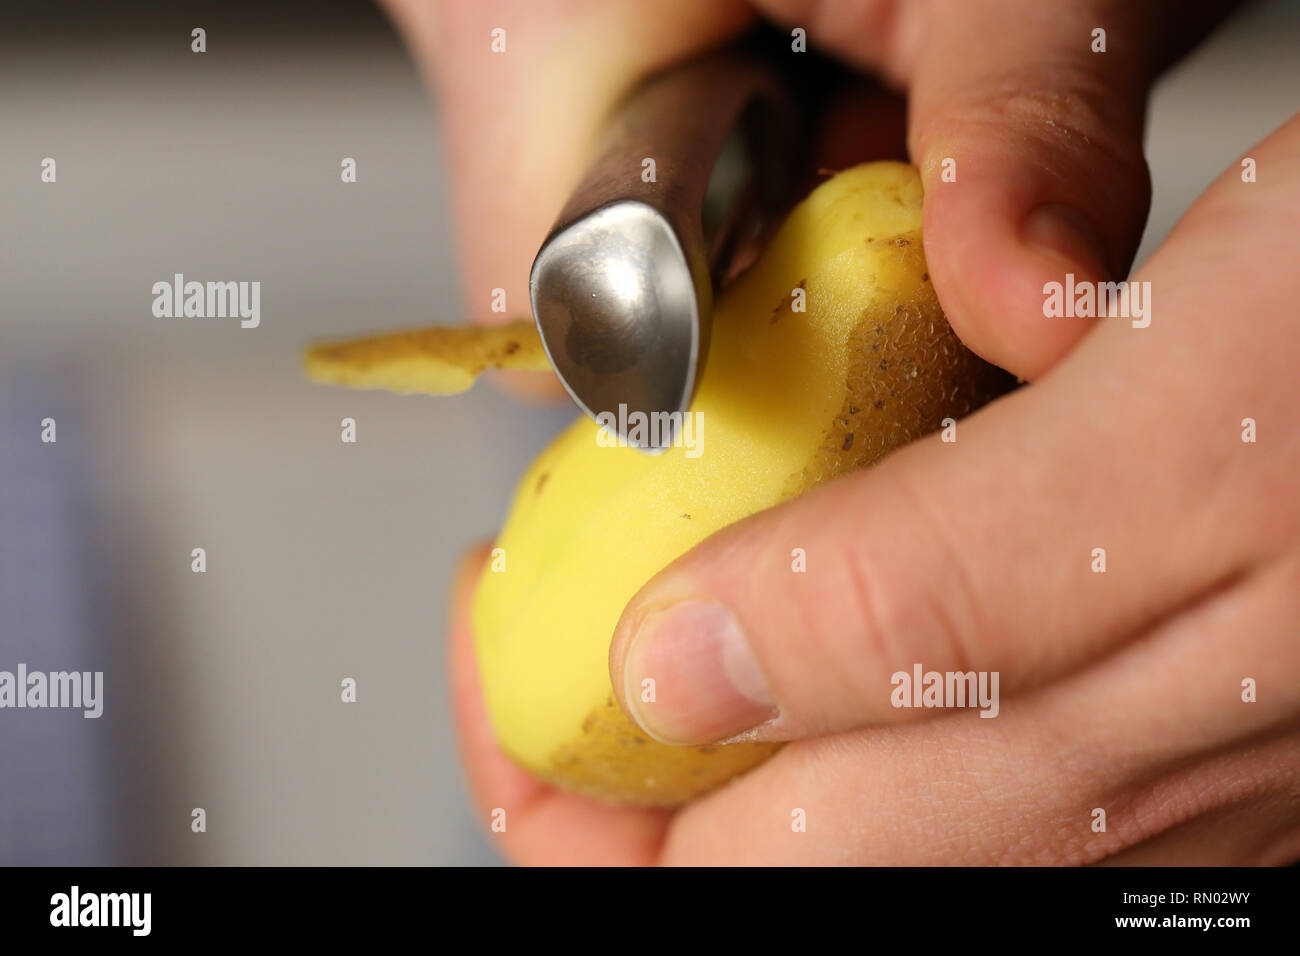 Ein Mann Peeling eine Kartoffel mit metallischen Sparschäler. Sie können sehen, Hände, eine Kartoffel und der Schäler in dieses Bild. Farbe Bild. Closeup Foto. Stockfoto